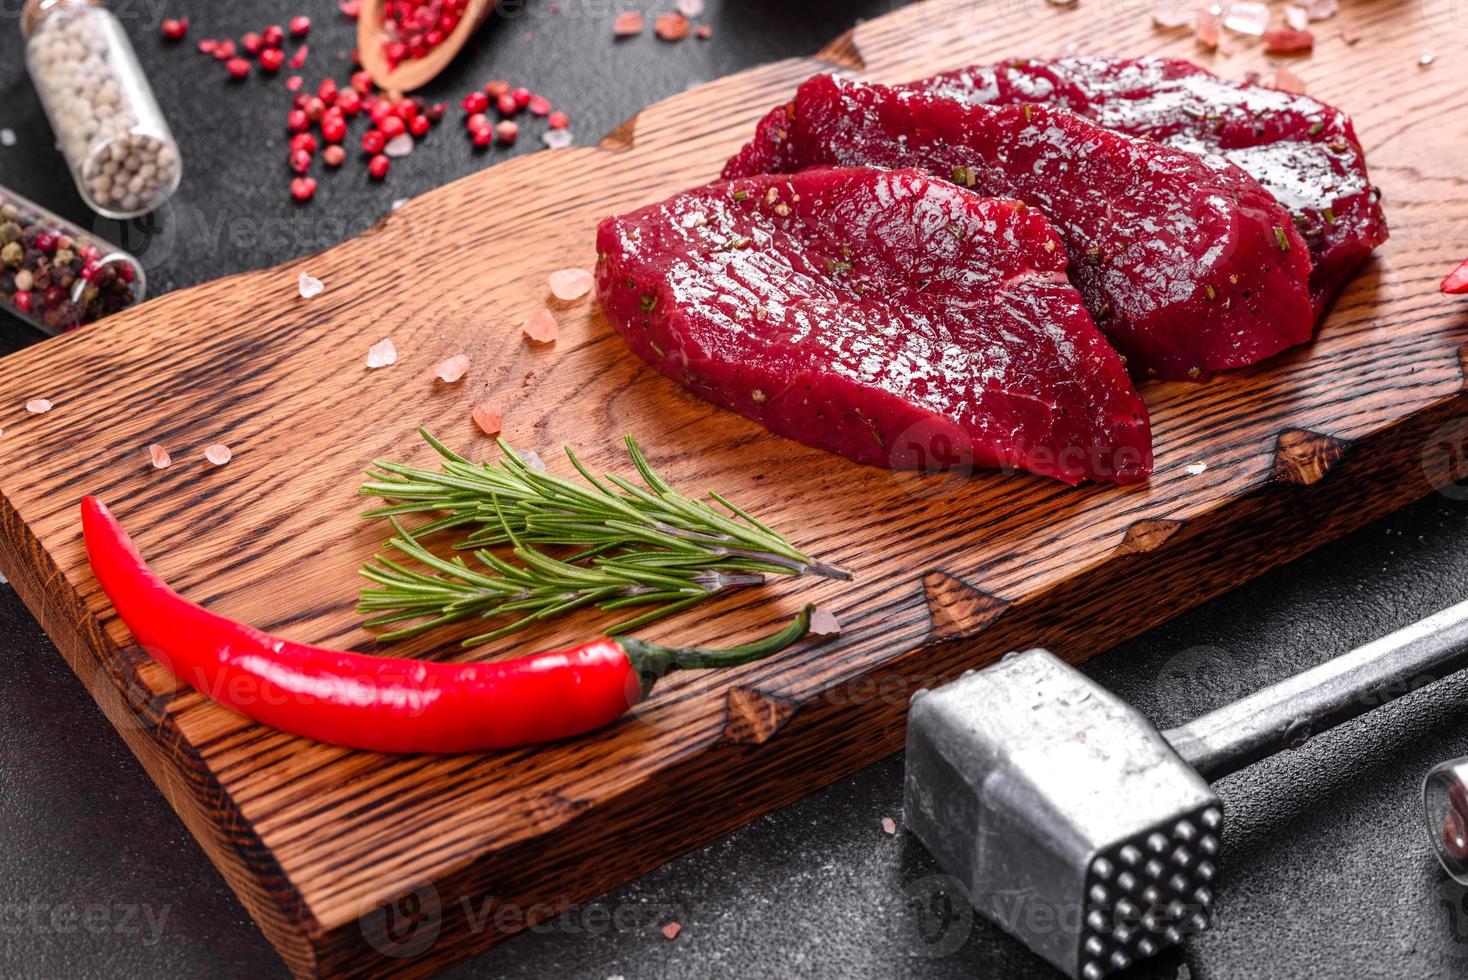 bife mignon de carne crua fresca, com sal, pimenta em grão foto